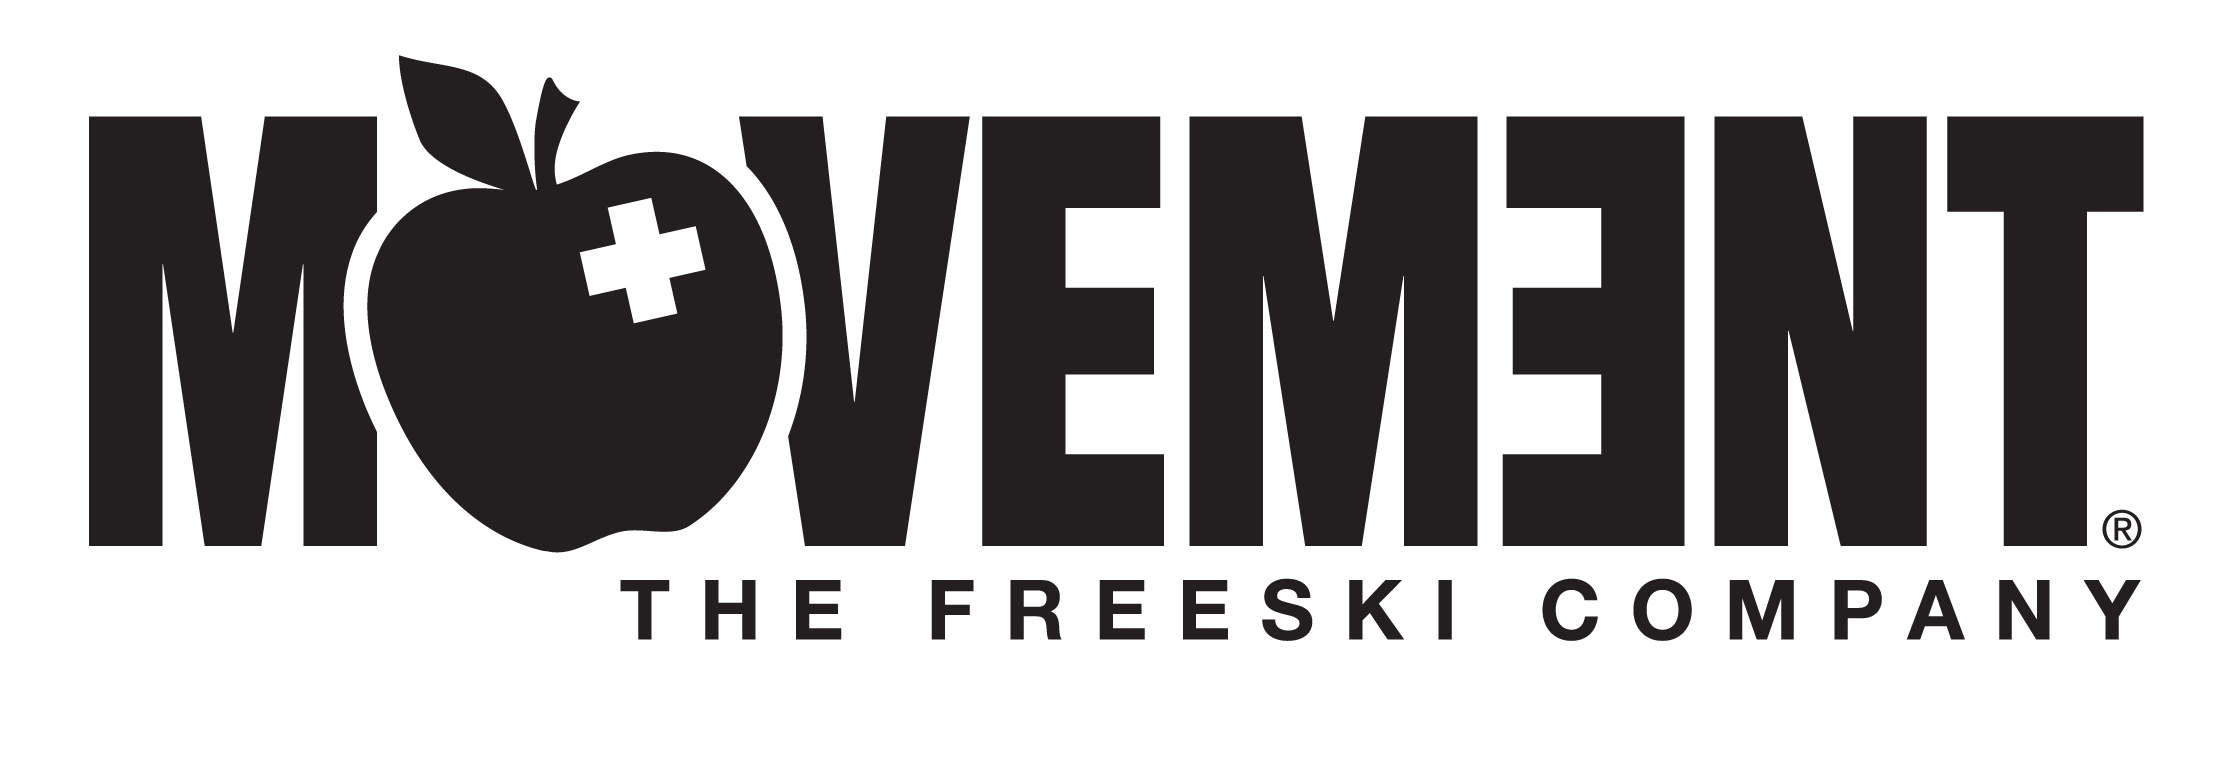 logo-bevegelse